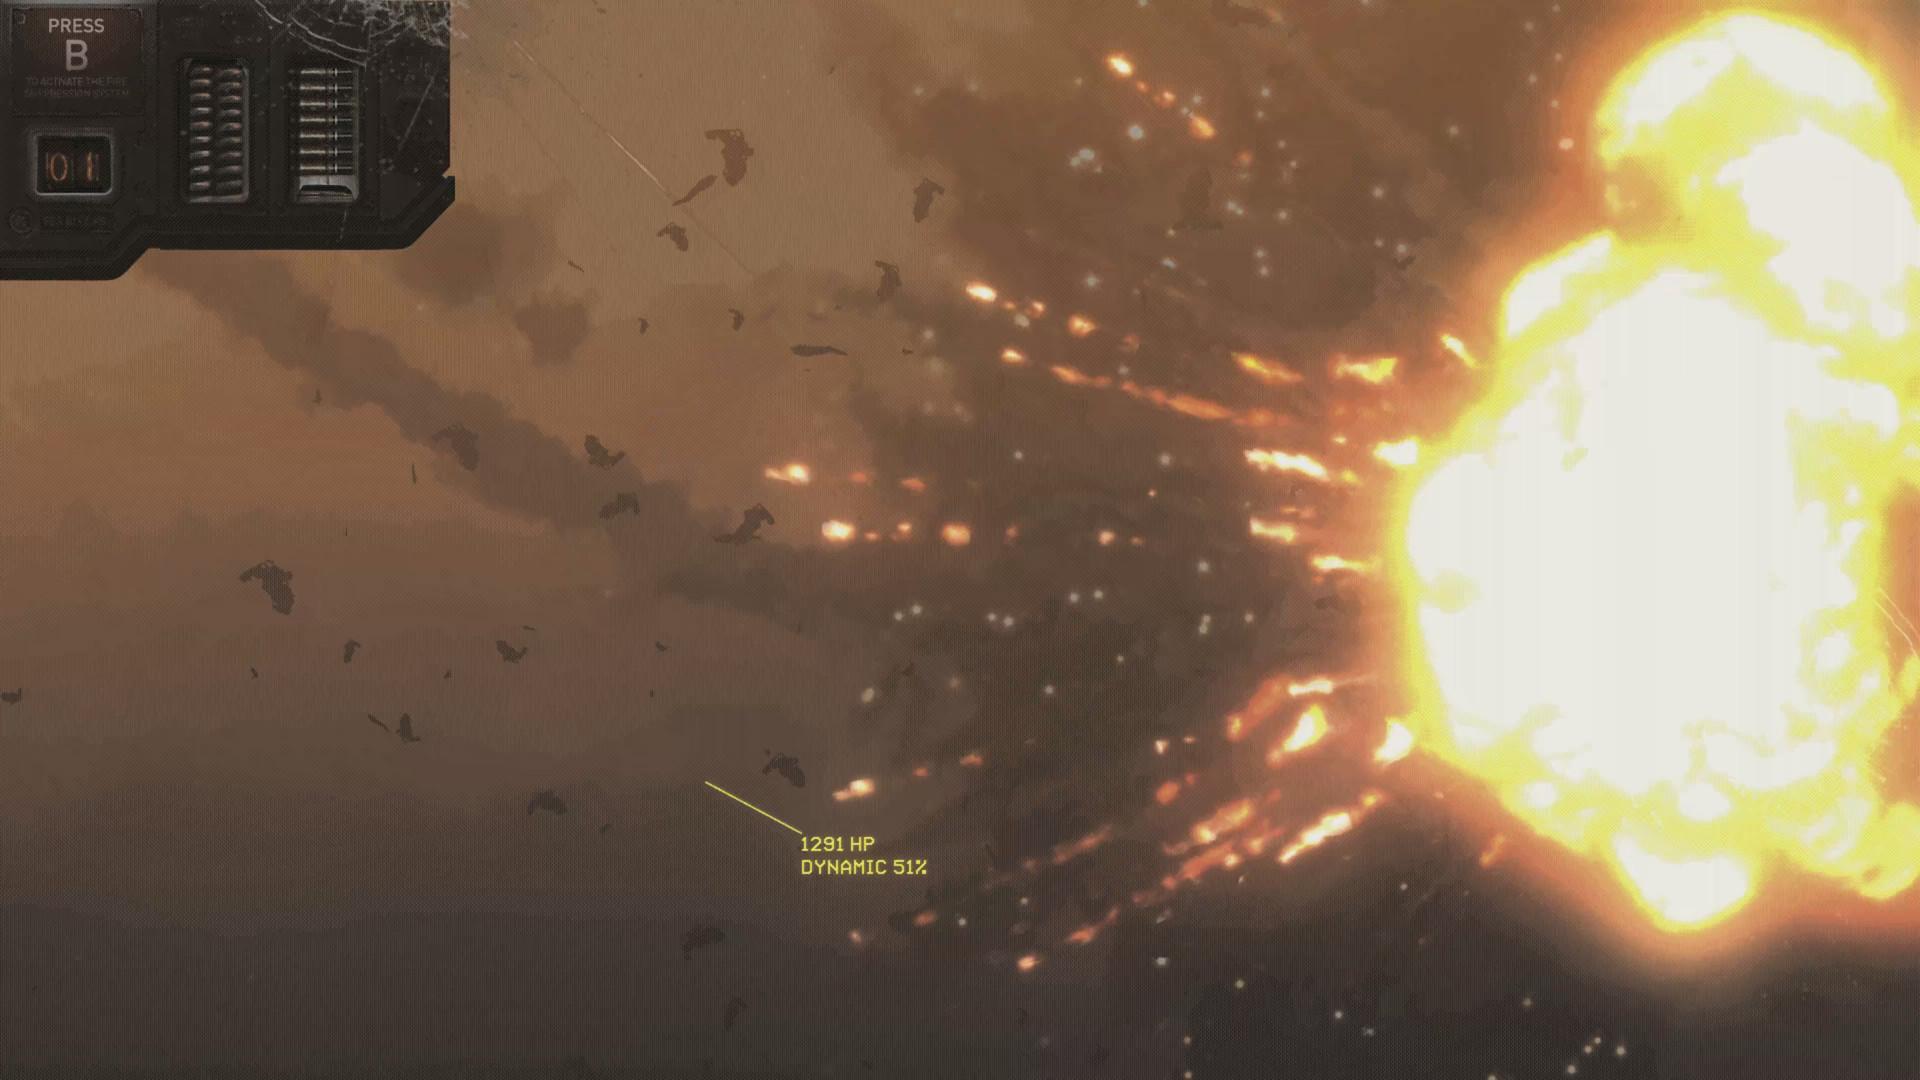 Screenshot №12 from game HighFleet